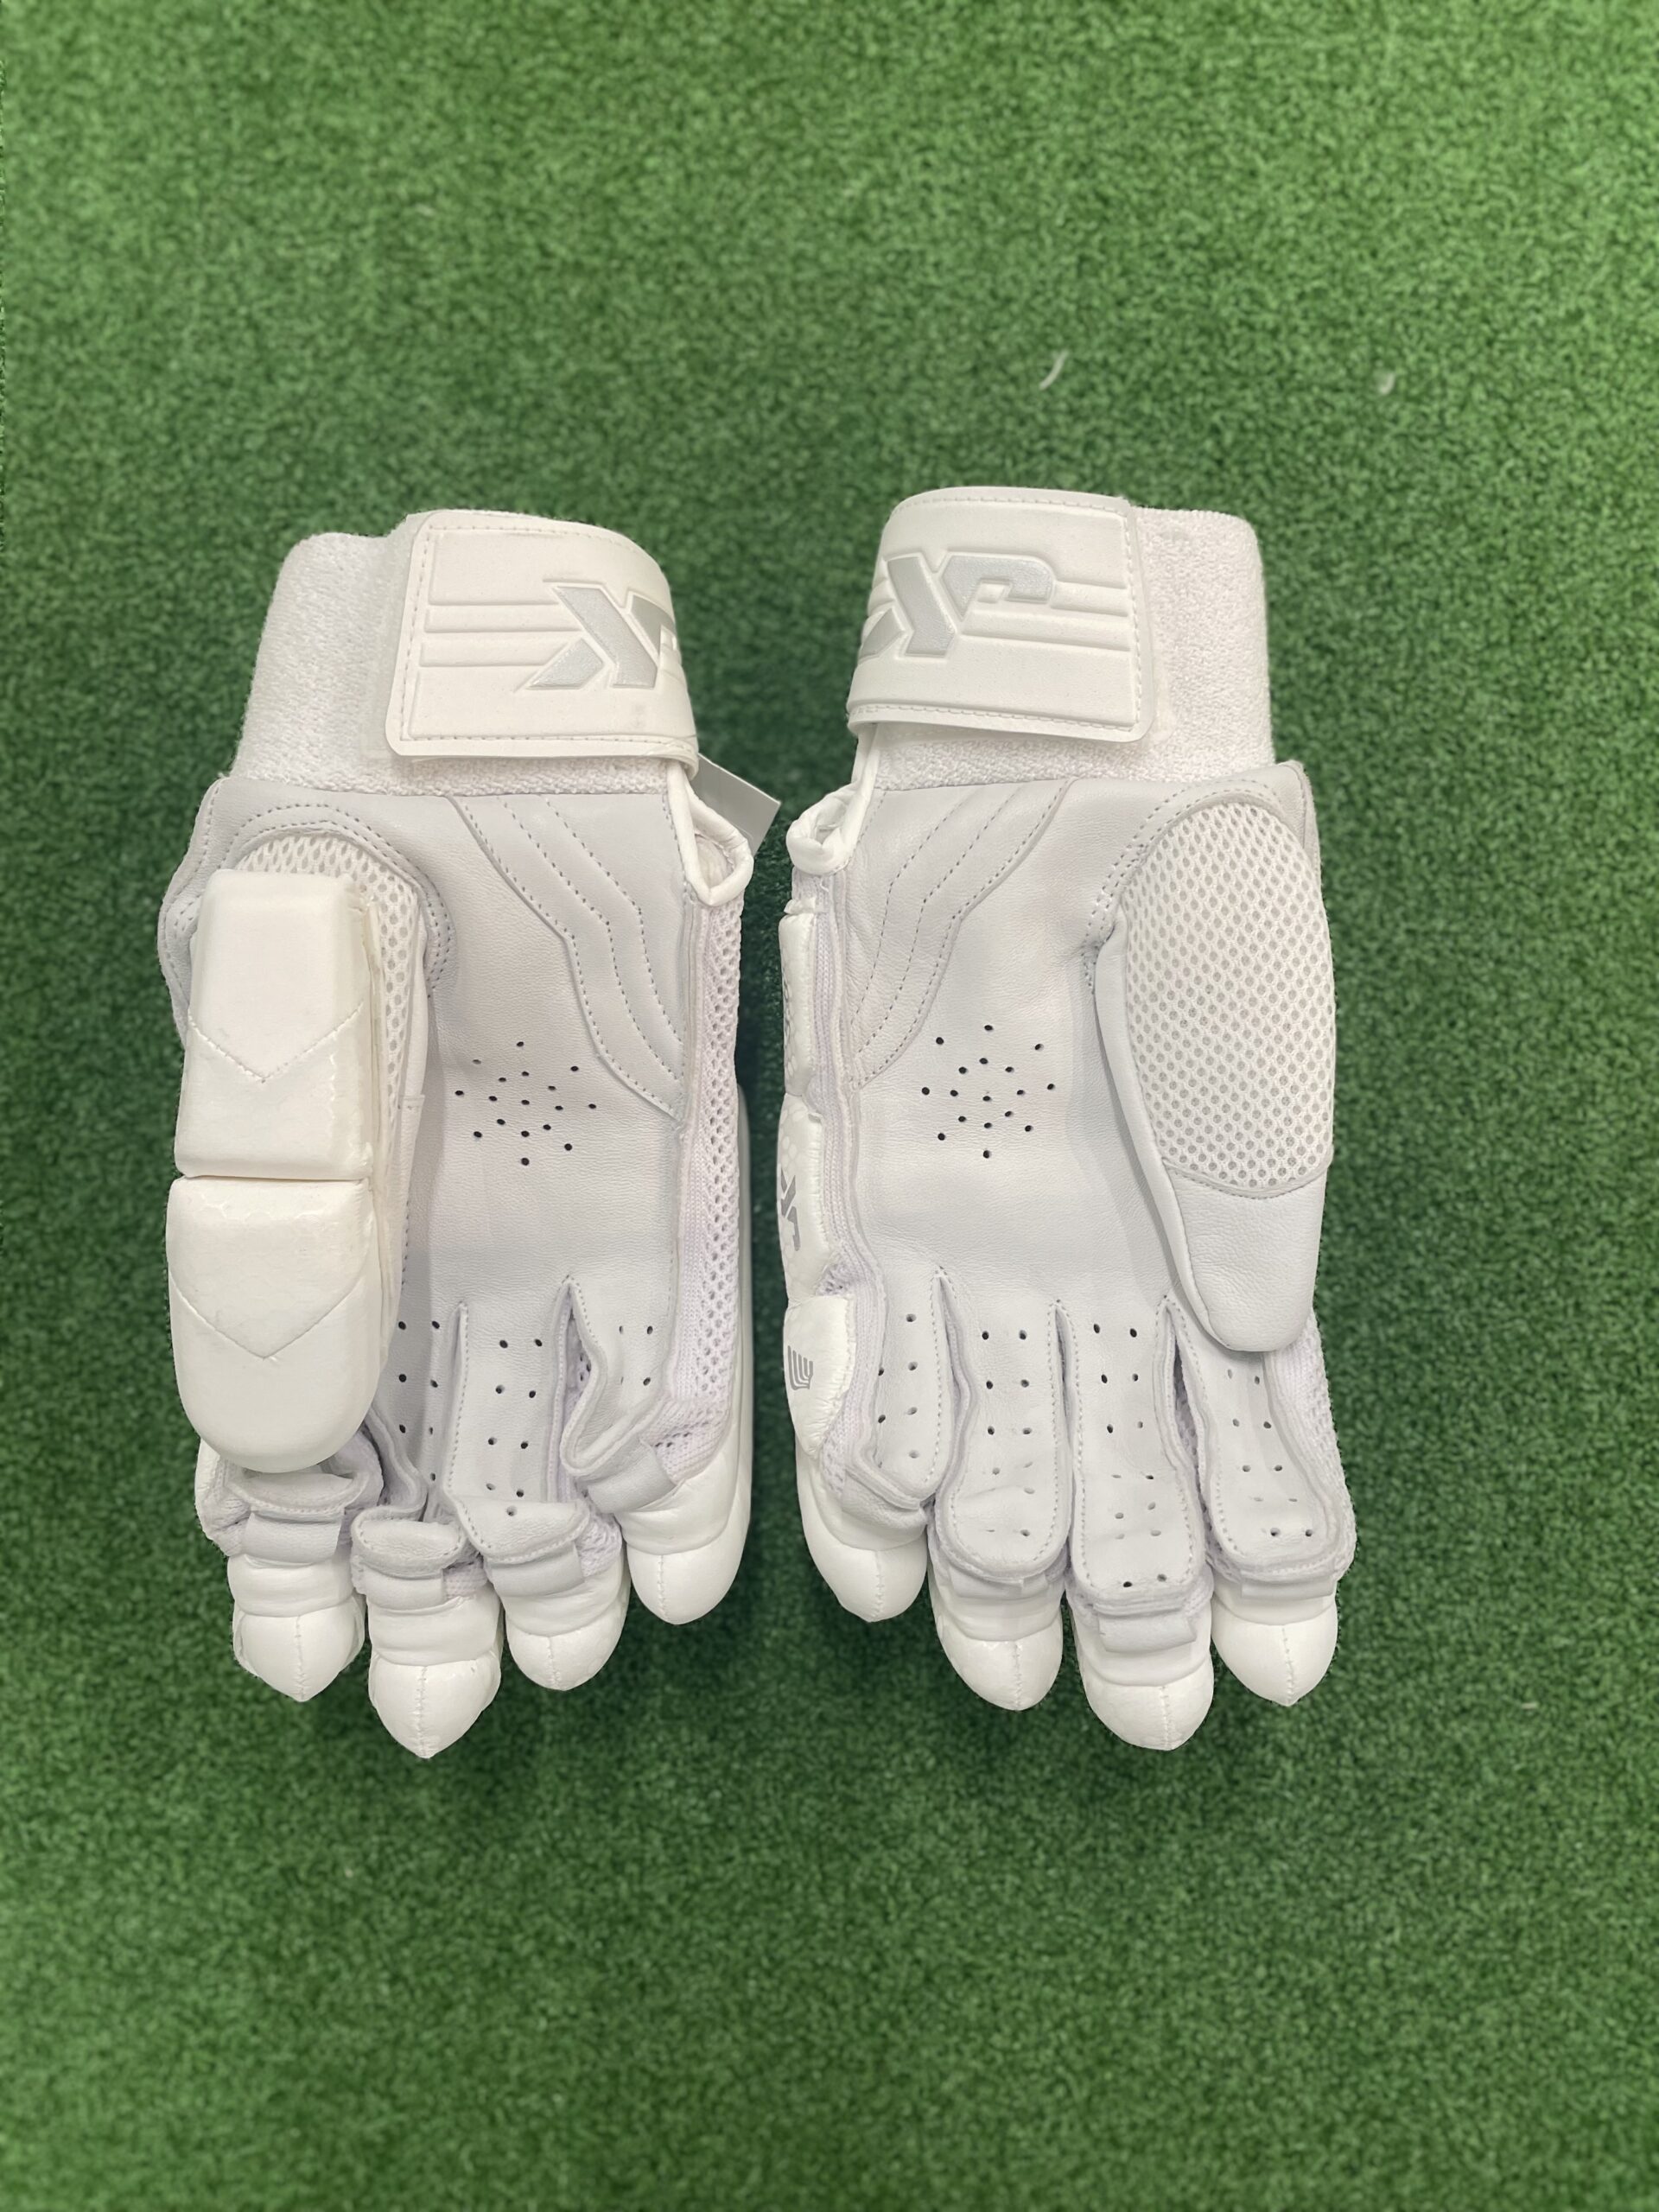 JK Pegasus 3.0 – Batting Gloves – Cricket For All